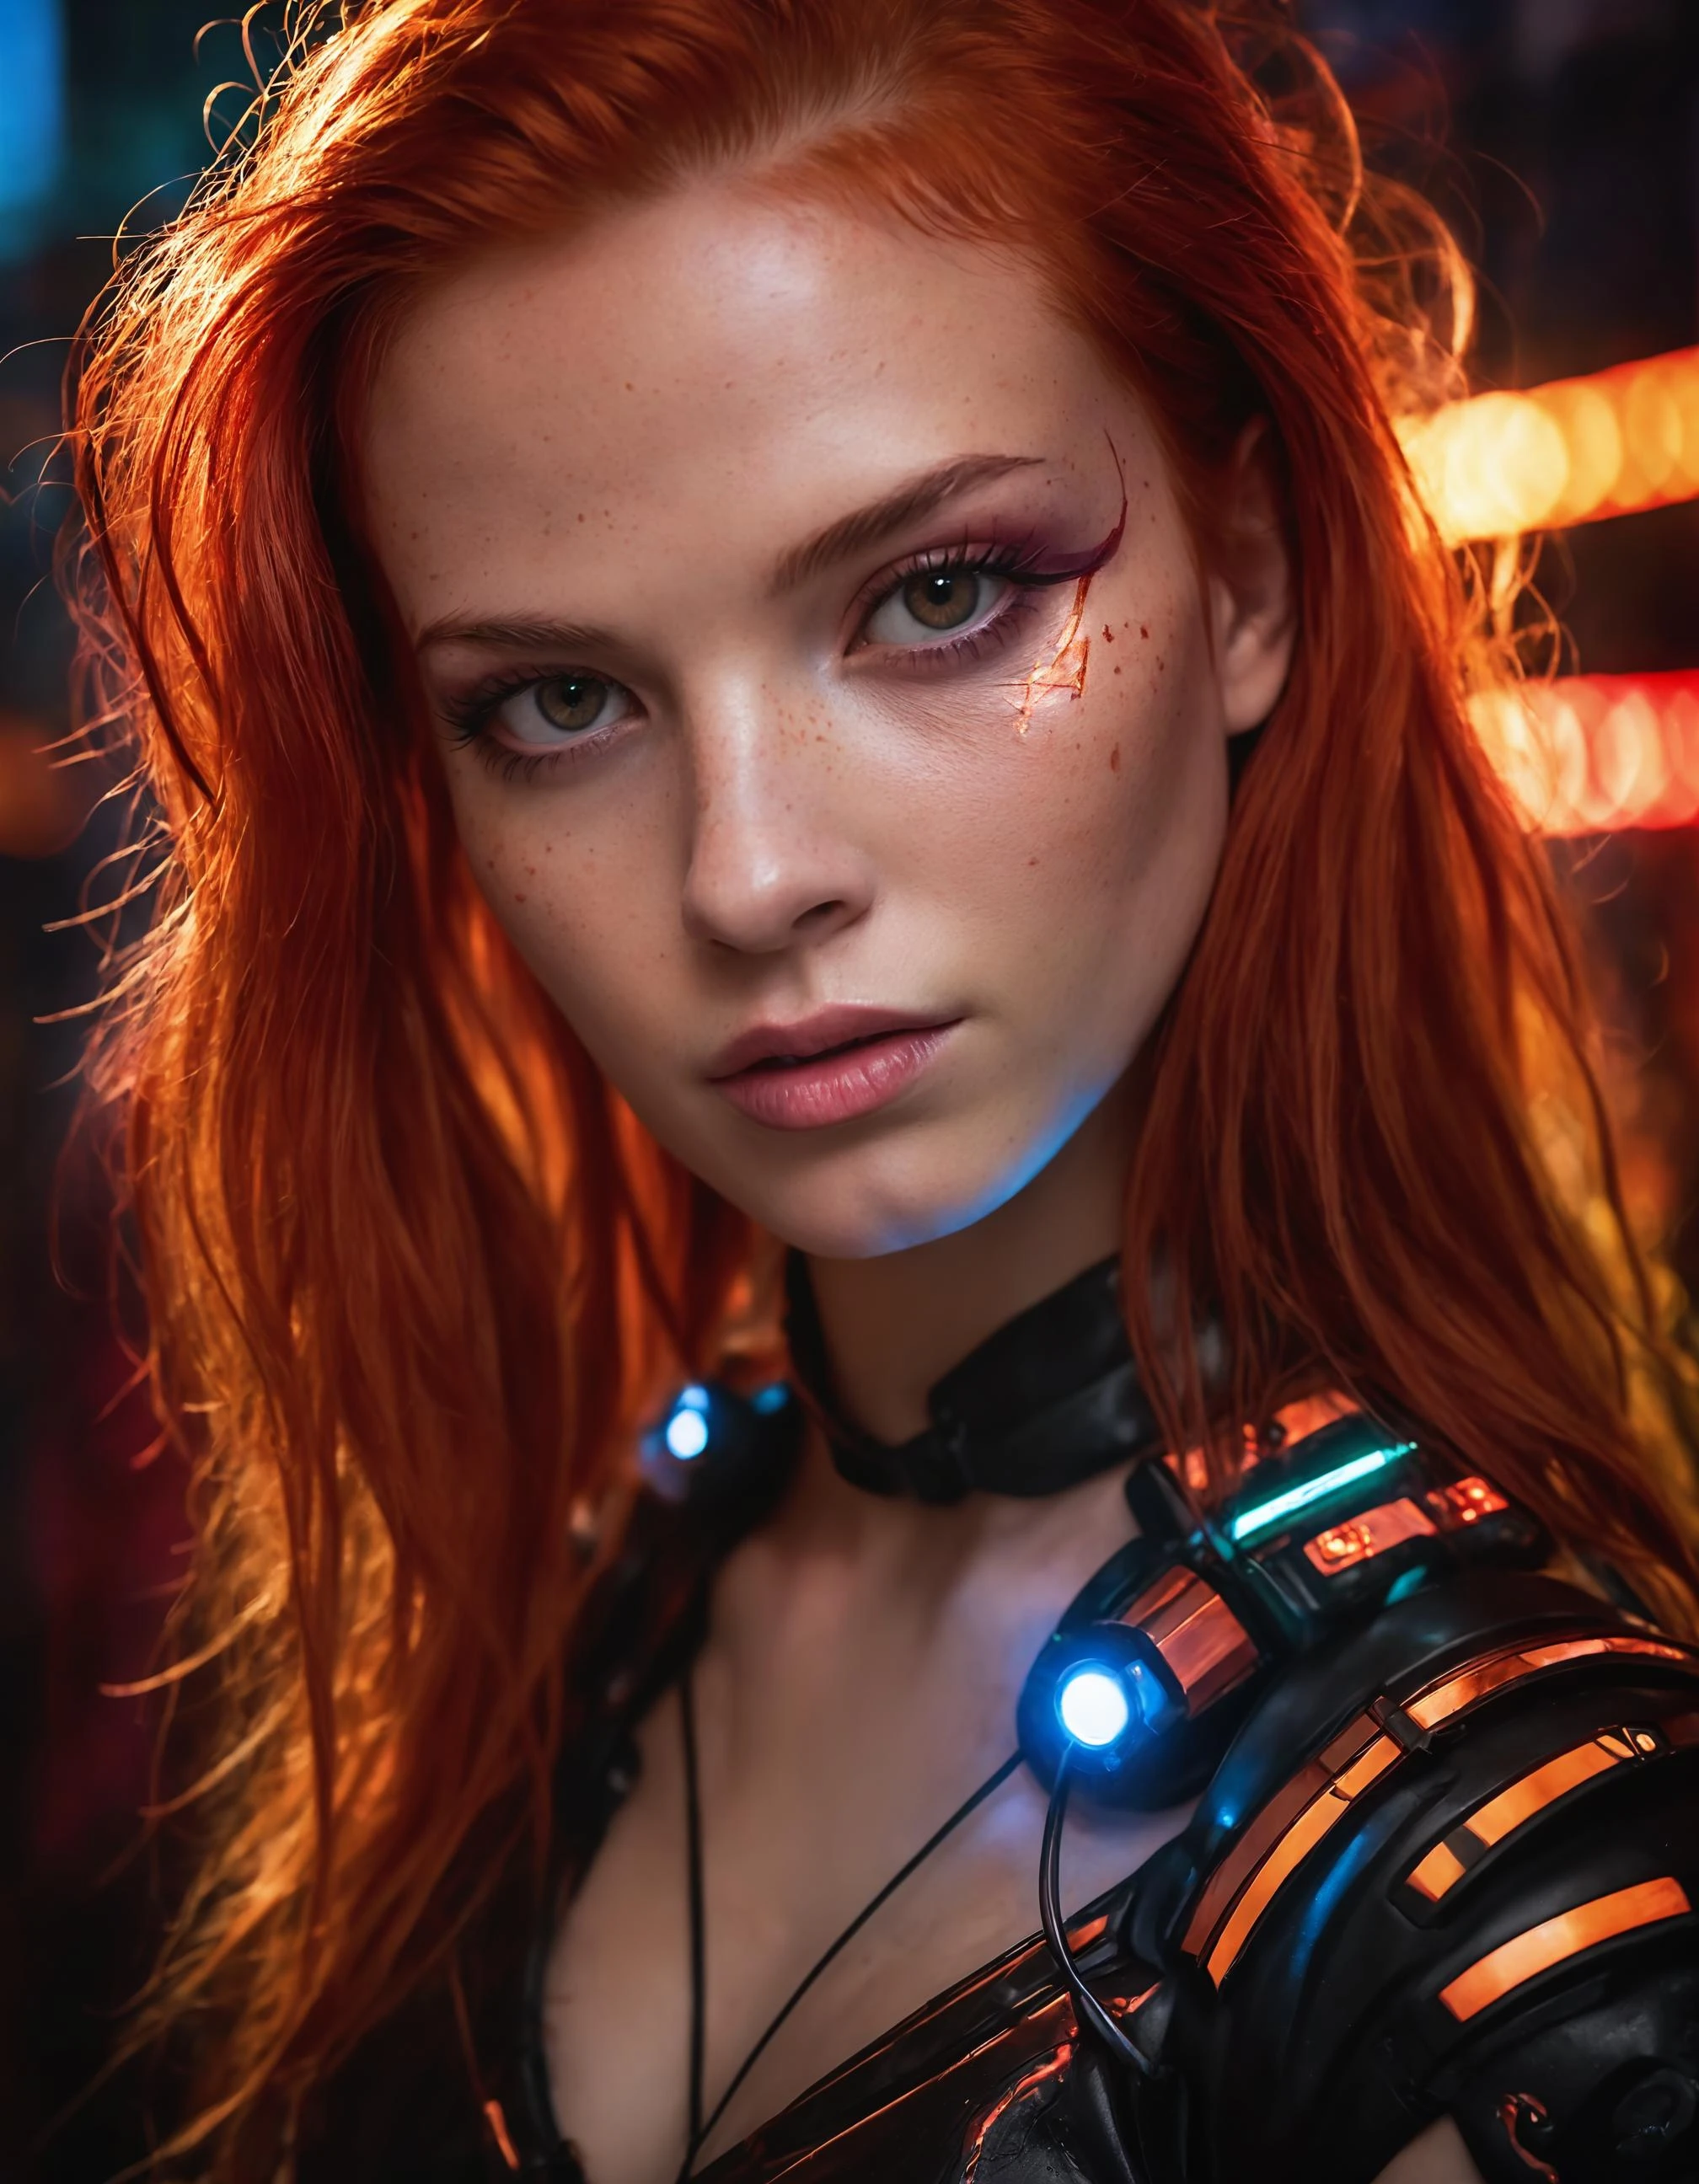 一張照片捕捉了一位火紅頭髮的年輕機器人女性的本質. 她的臉充滿了畫面, 沐浴在霓虹色彩中, 在未來主義的背景下散發著決心和神秘感., 不明確的